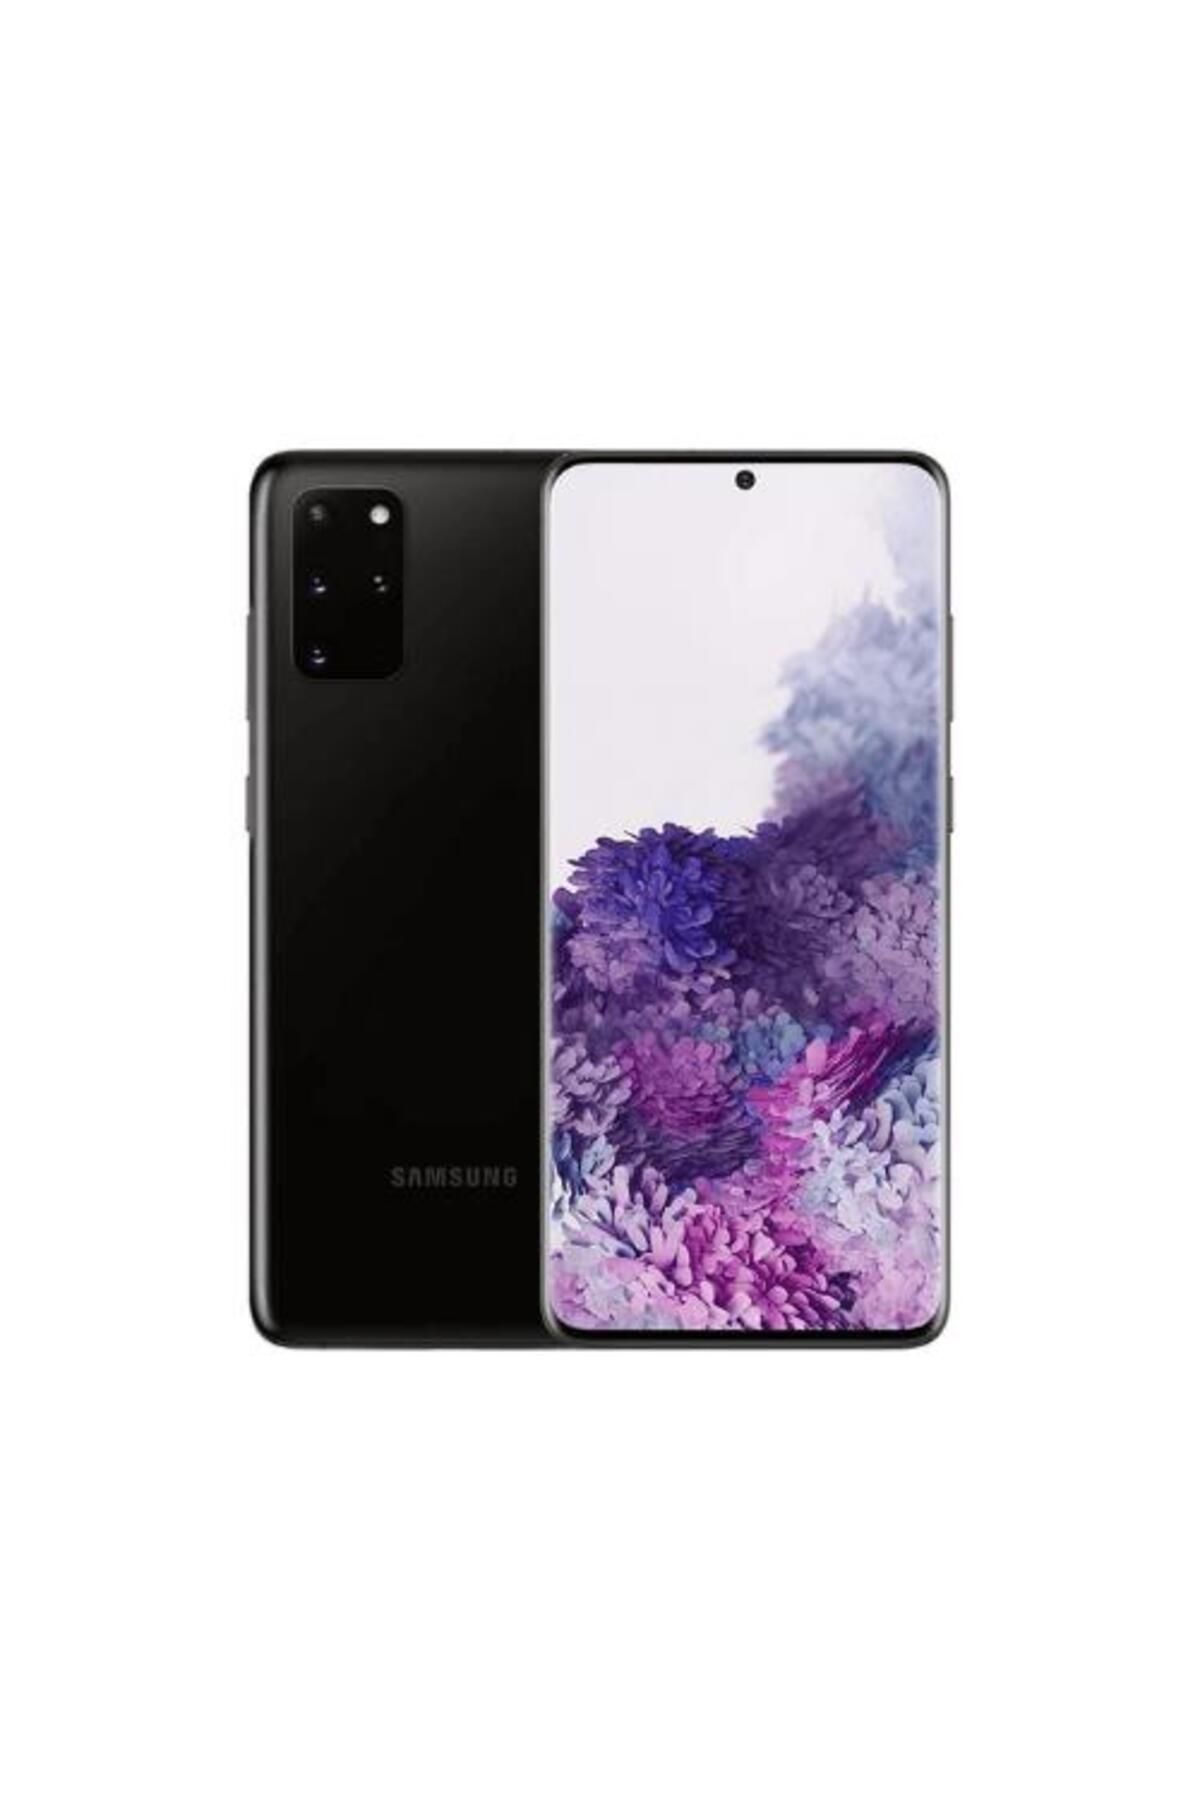 Samsung Yenilenmiş Galaxy S20 Plus 128gb -a Kalite- Siyah